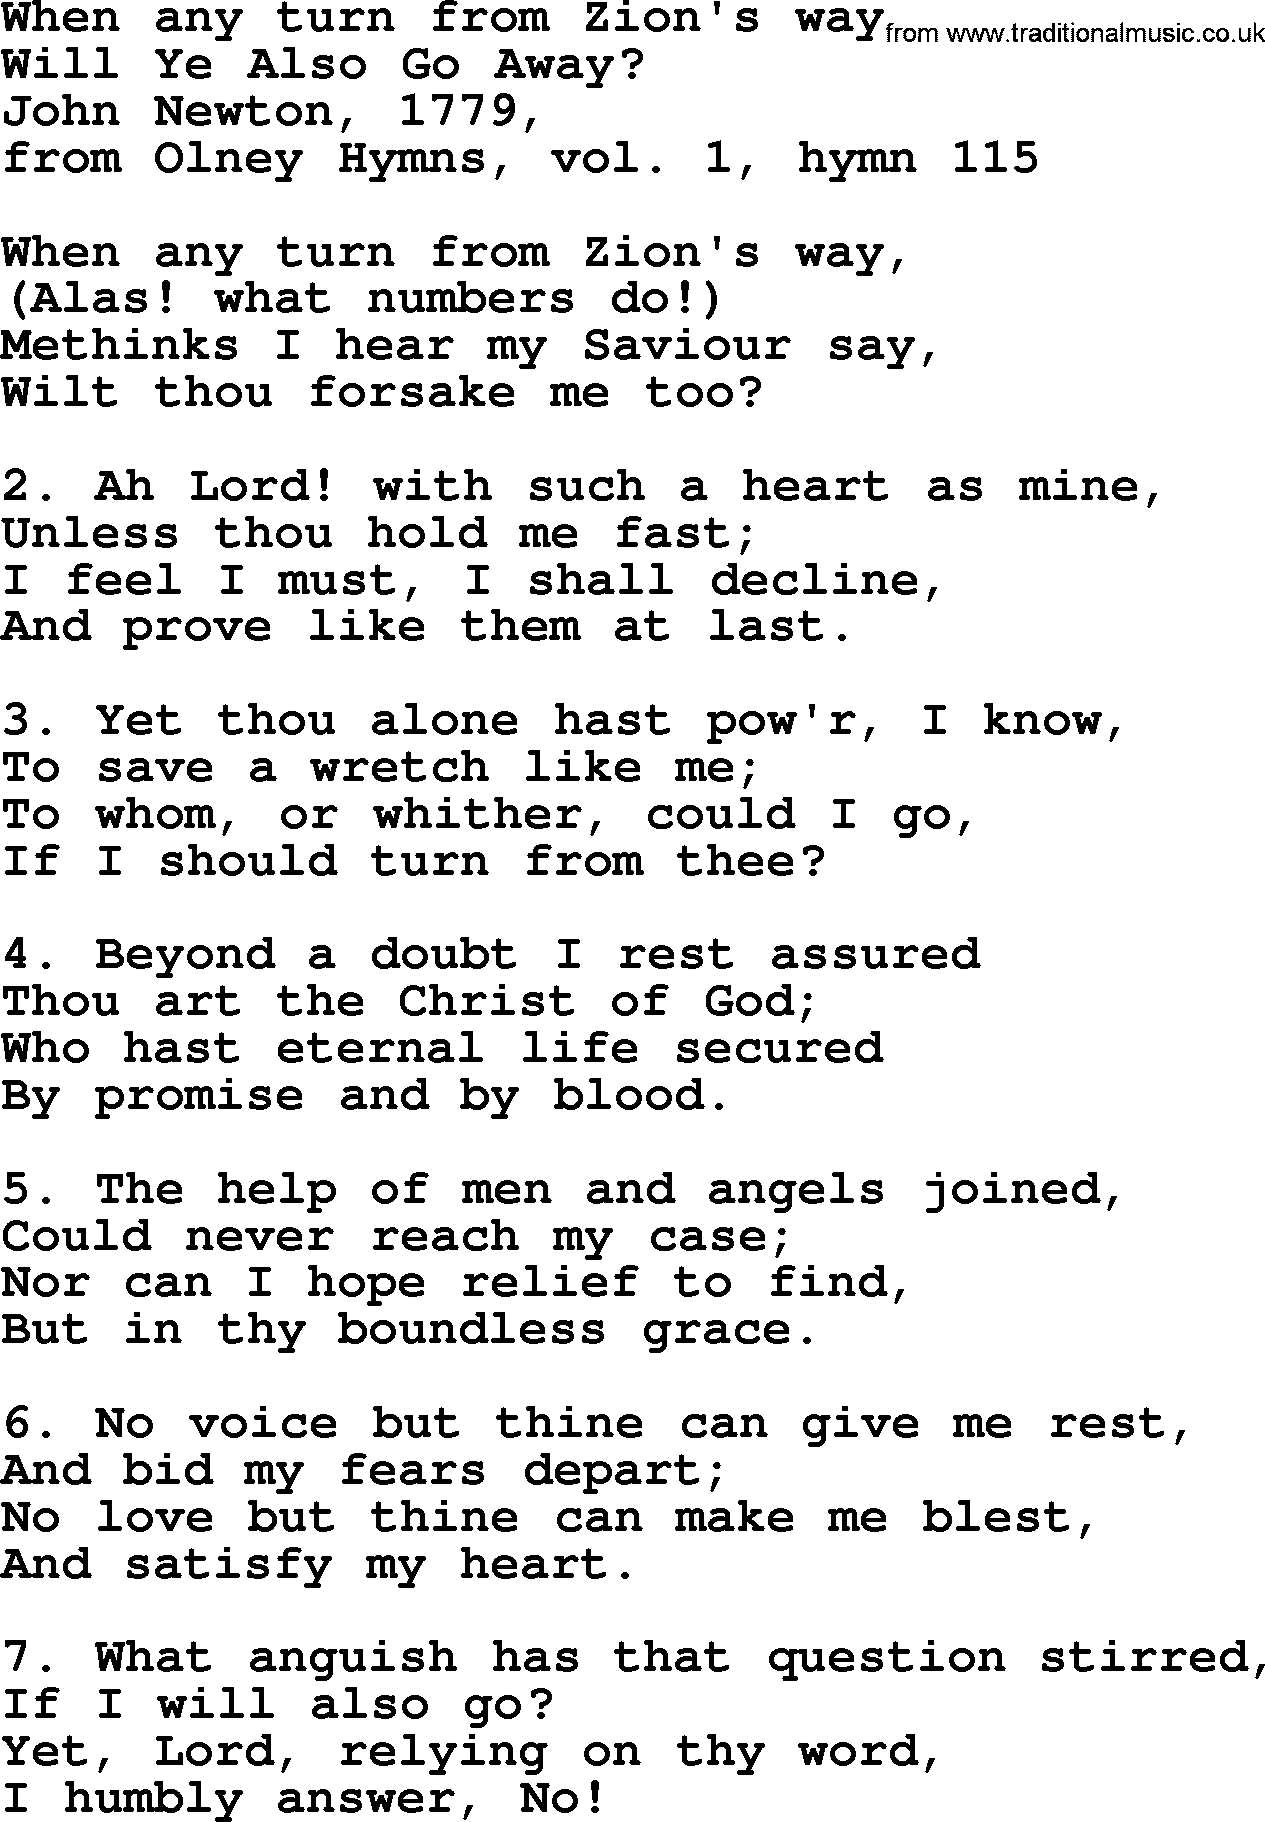 John Newton hymn: When Any Turn From Zion's Way, lyrics